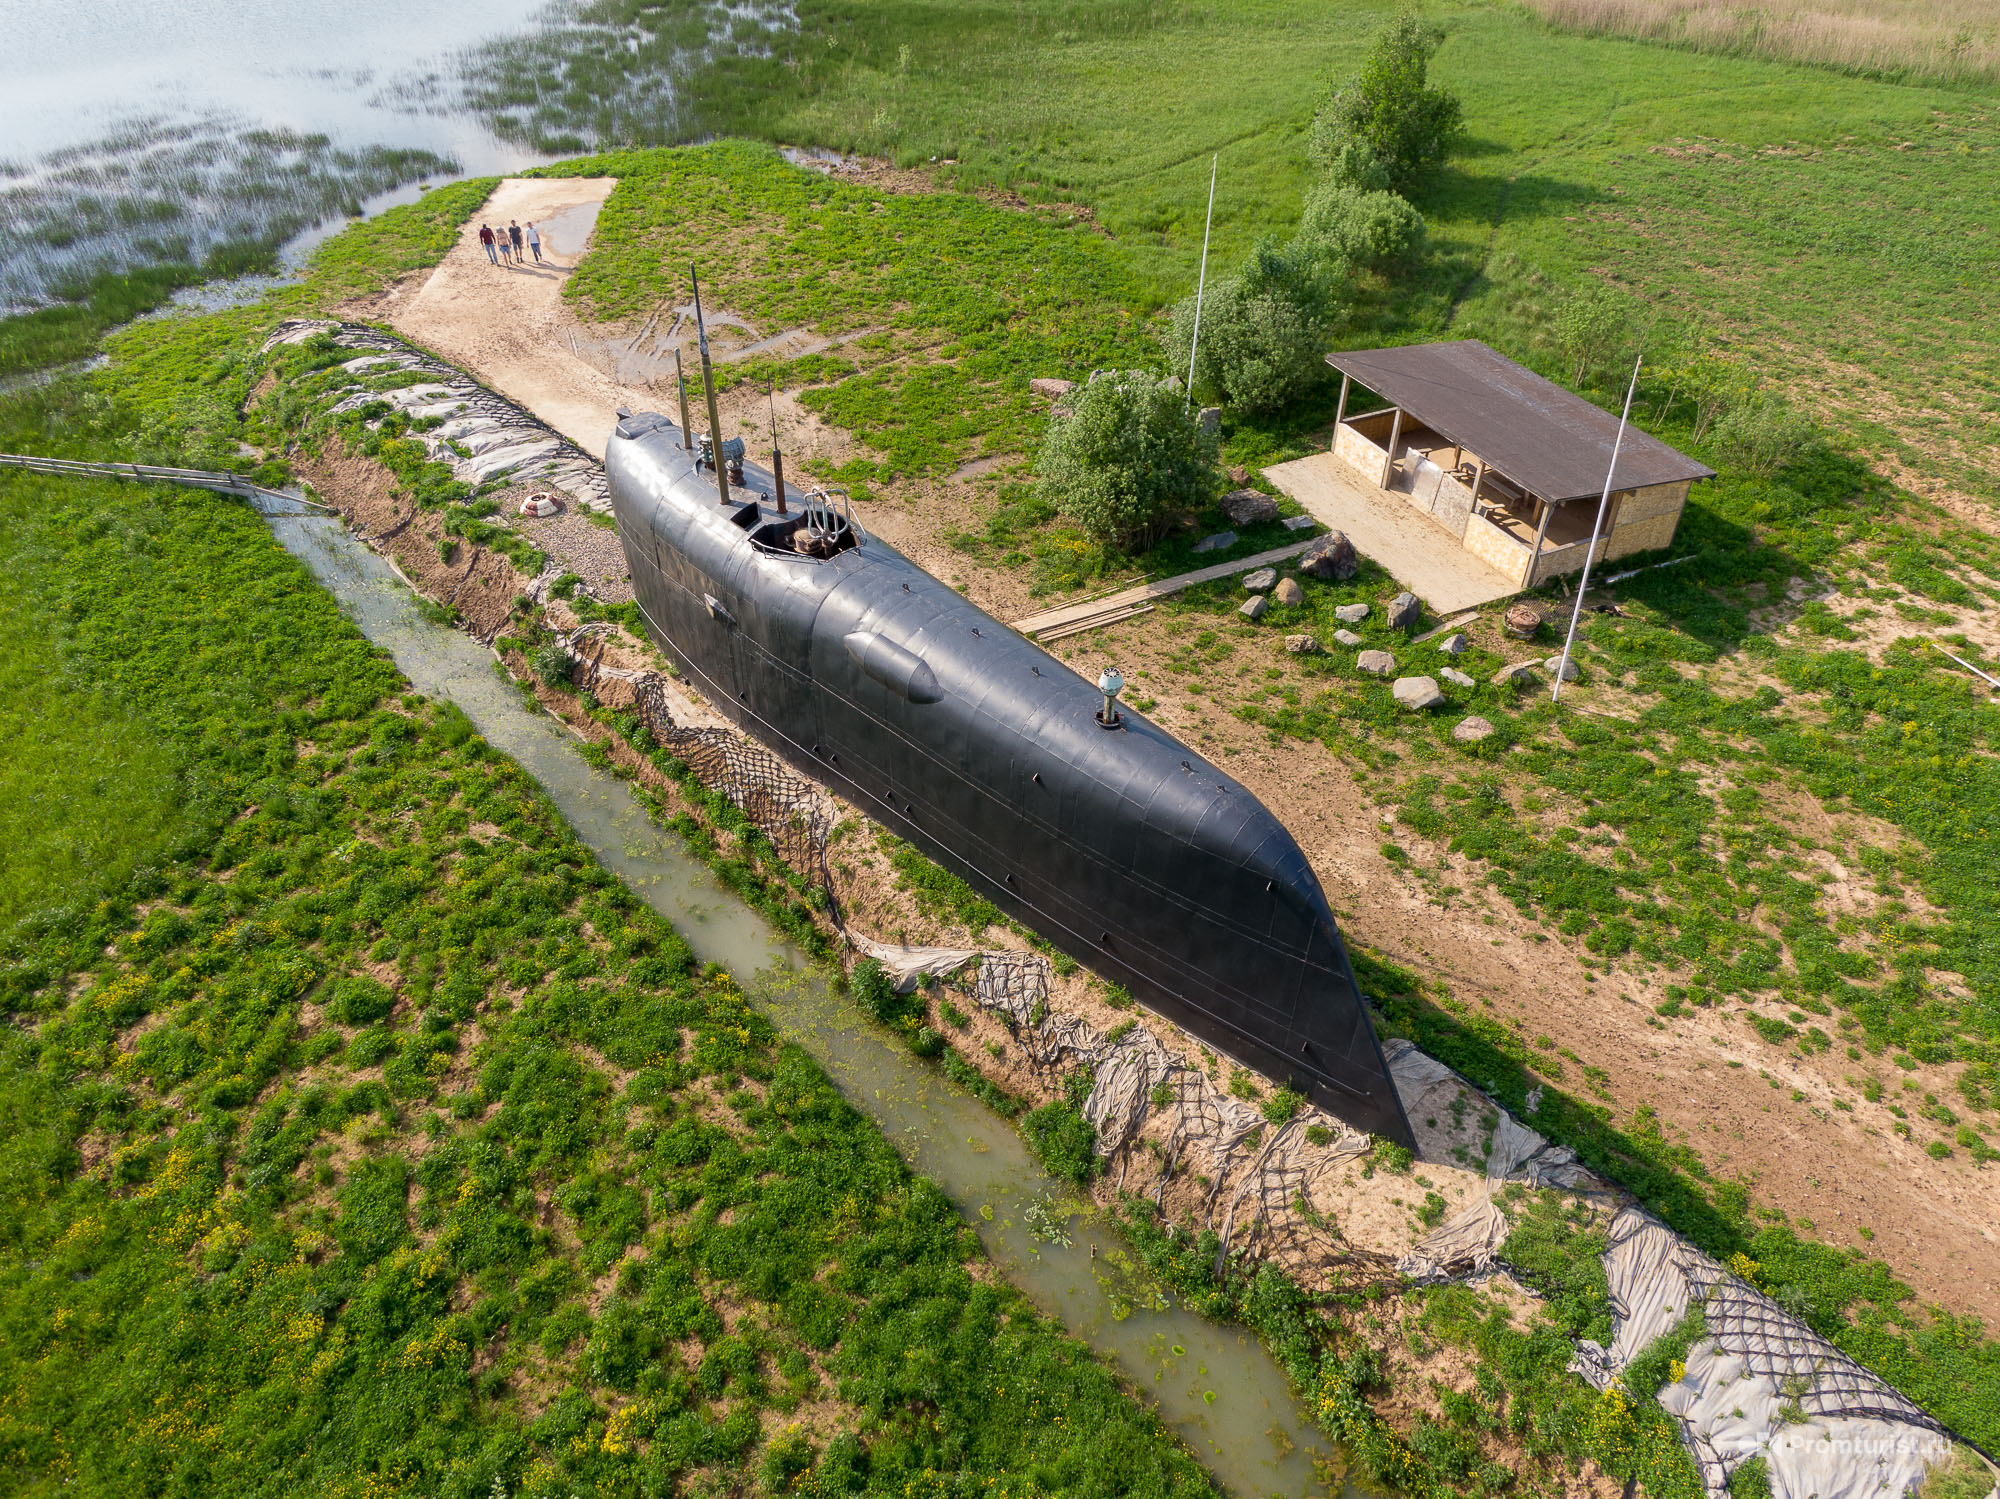 Пл ев. К-19 атомная подводная лодка. Никульская подводная лодка к19. Подводная лодка к-19 в Мытищах. АПЛ К 19 подводная лодка.